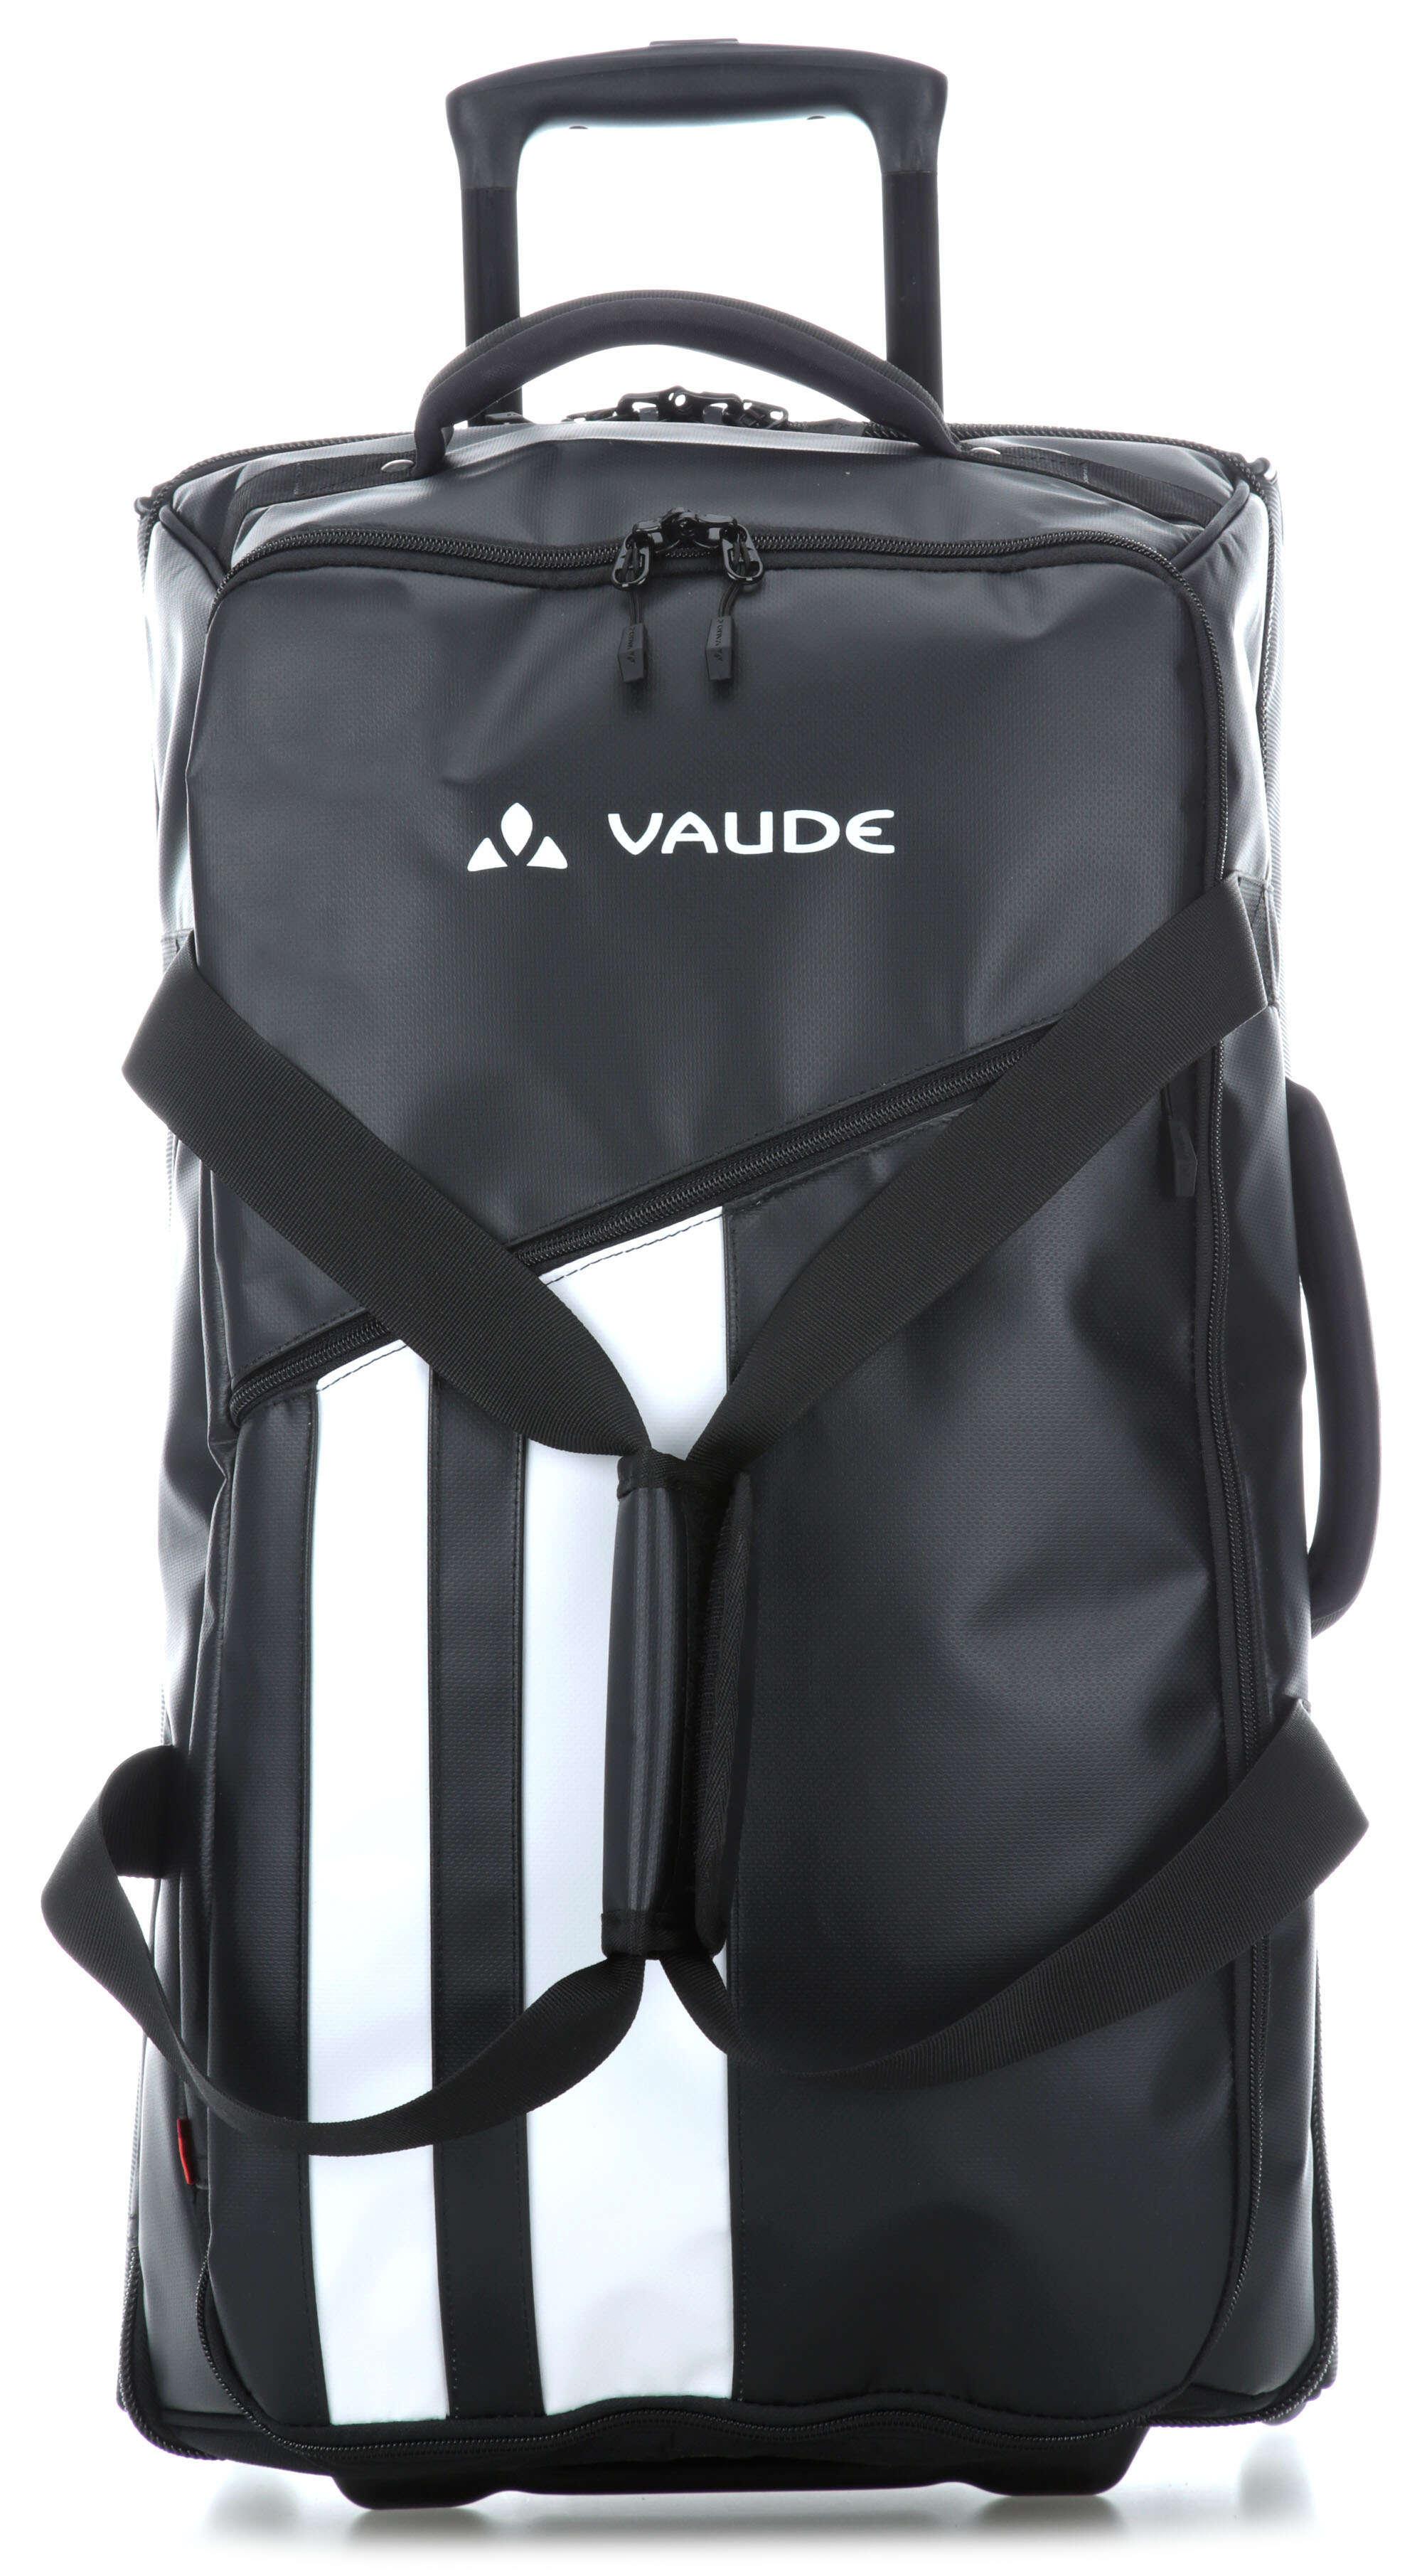 Vaude Rotuma 90 Rollenreisetasche schwarz 75 cm